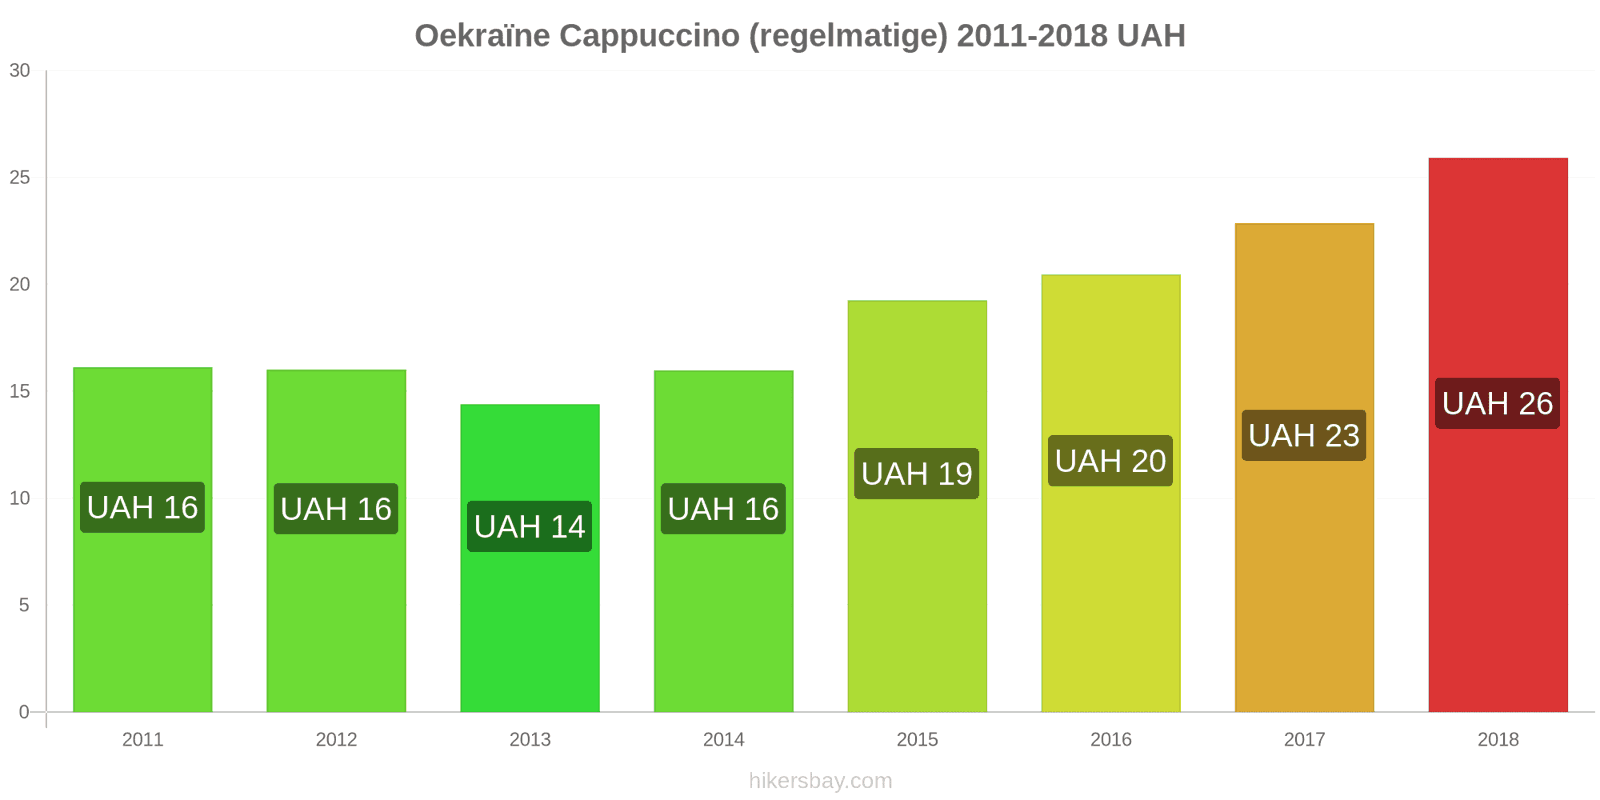 Oekraïne prijswijzigingen Cappuccino hikersbay.com